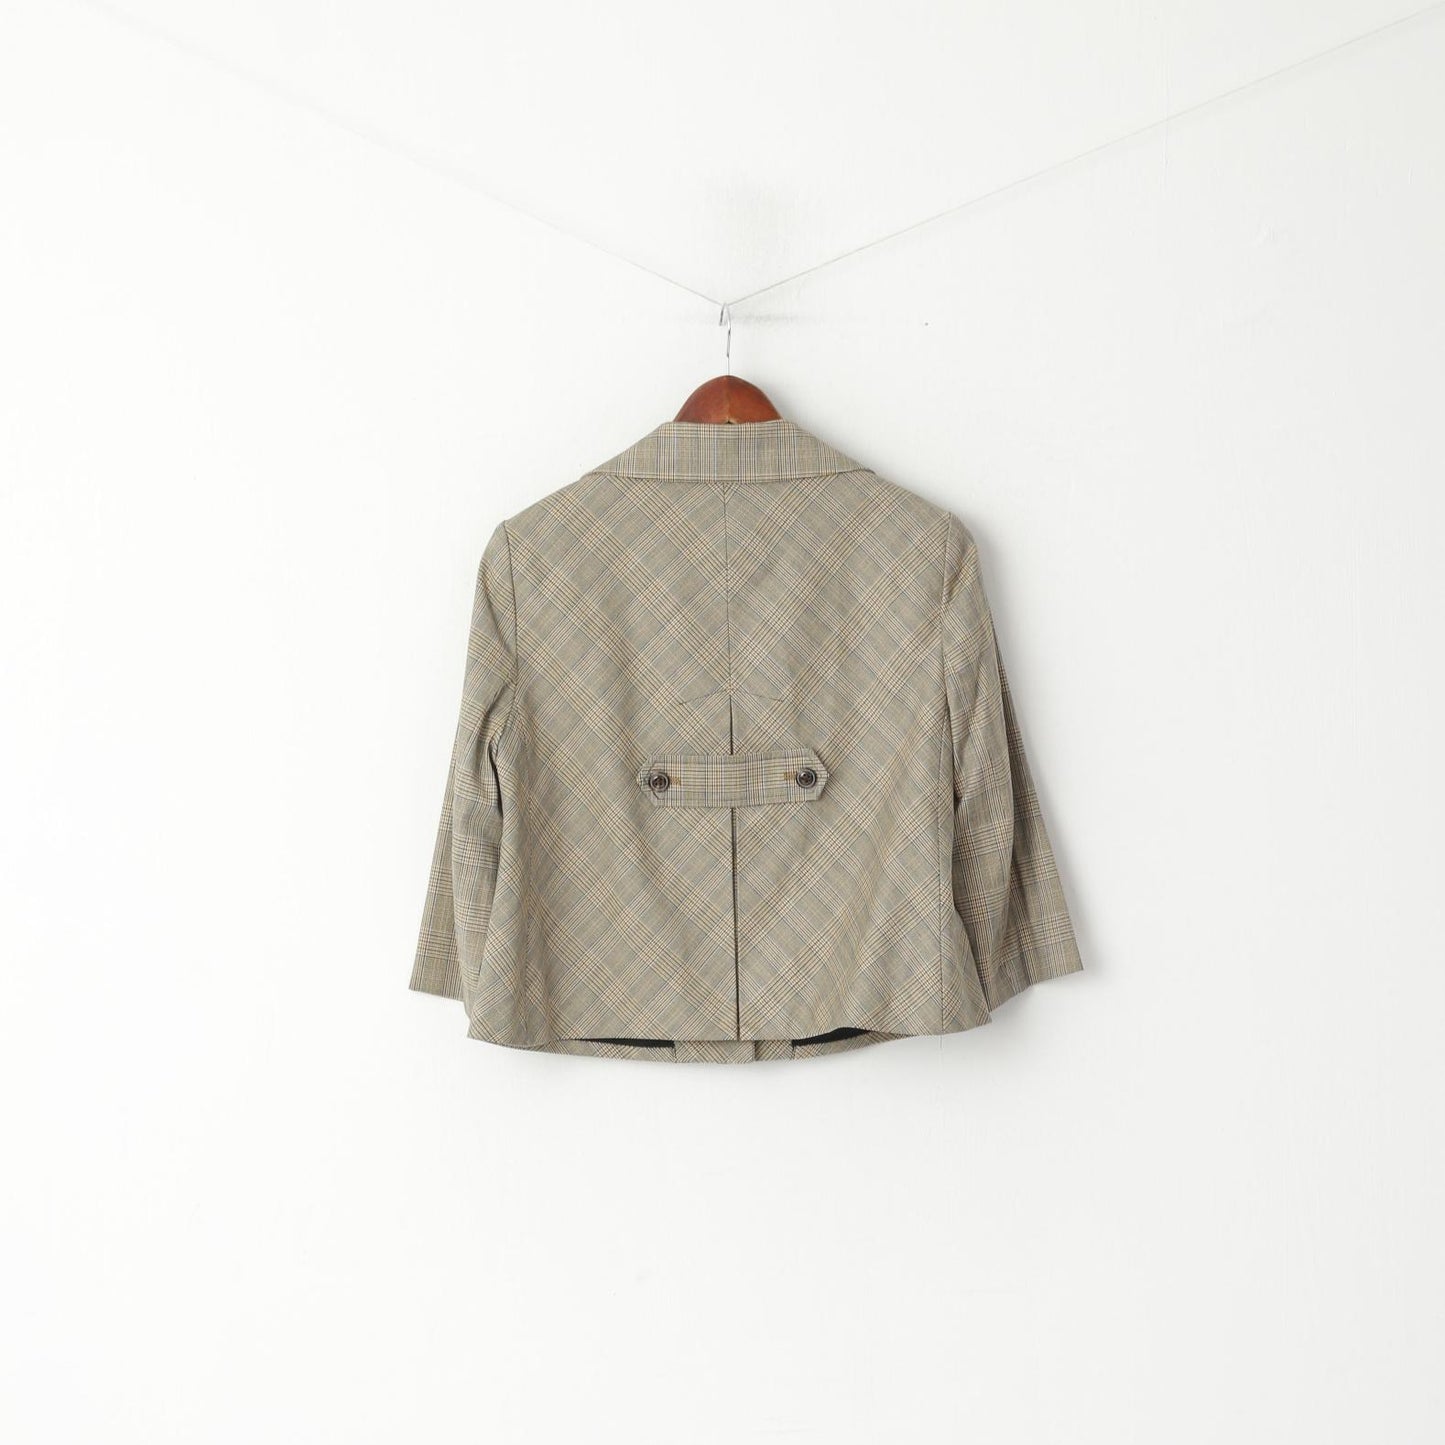 Anne Klein Women 8 M Jacket Cropped Brown Check Stretch Cotton 3/4 Sleeve Blazer